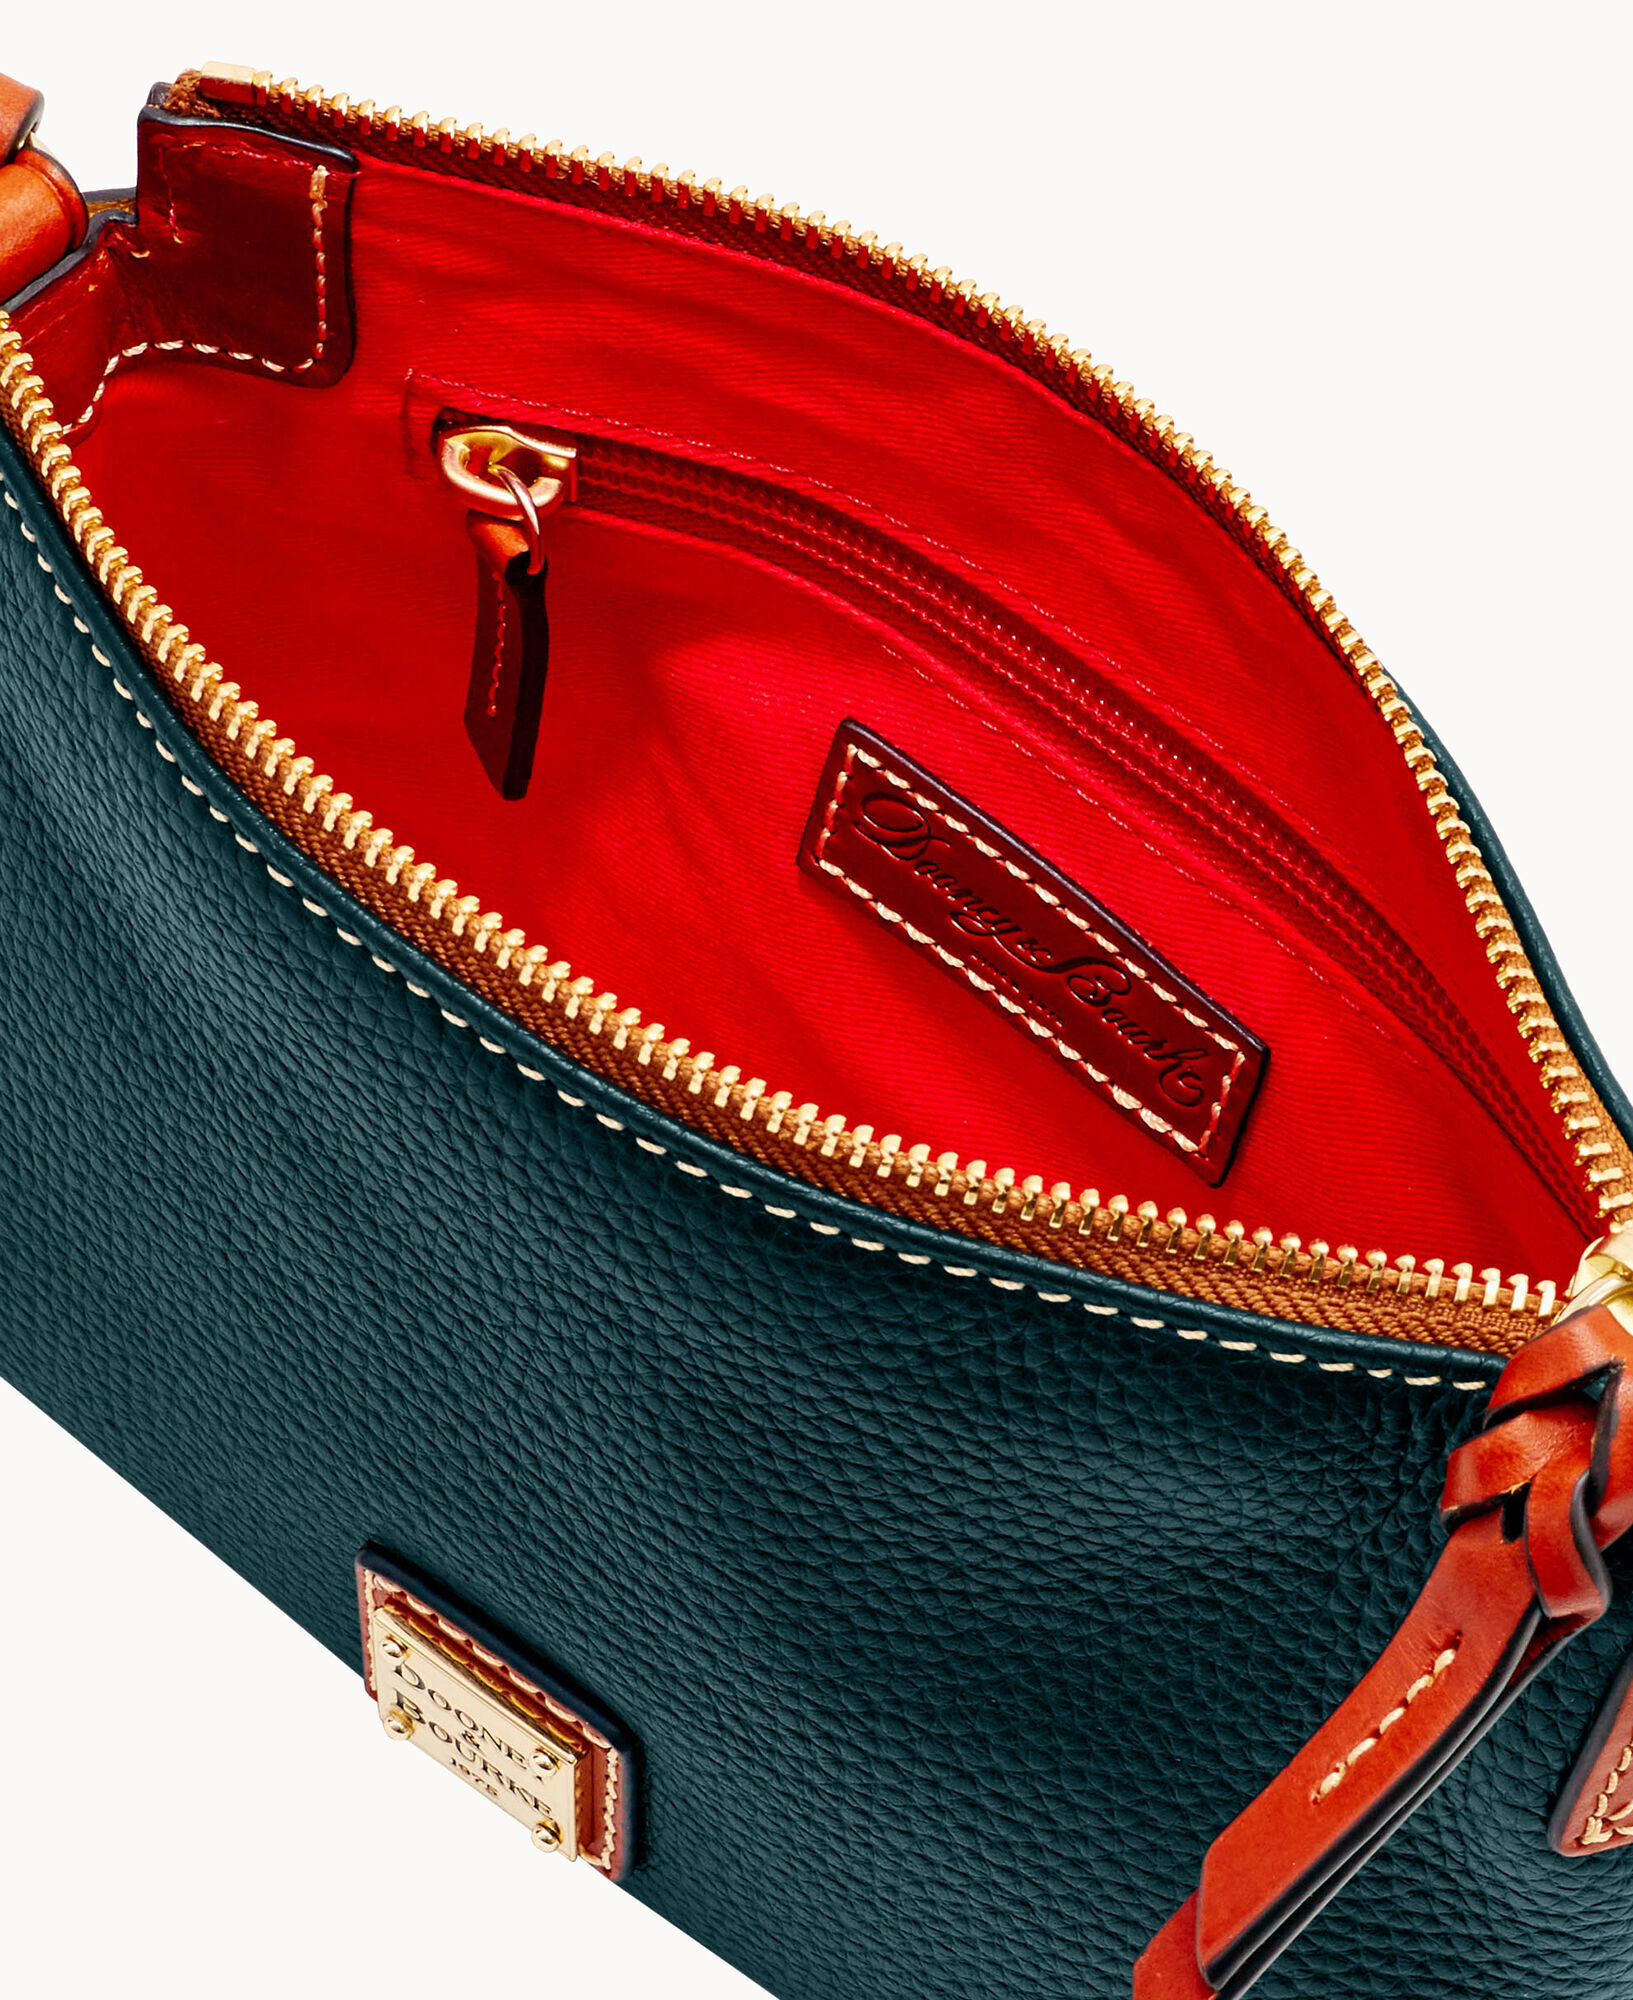 Bag Review: DOONEY CAMERA ZIP CROSSBODY BAG in Olive Green